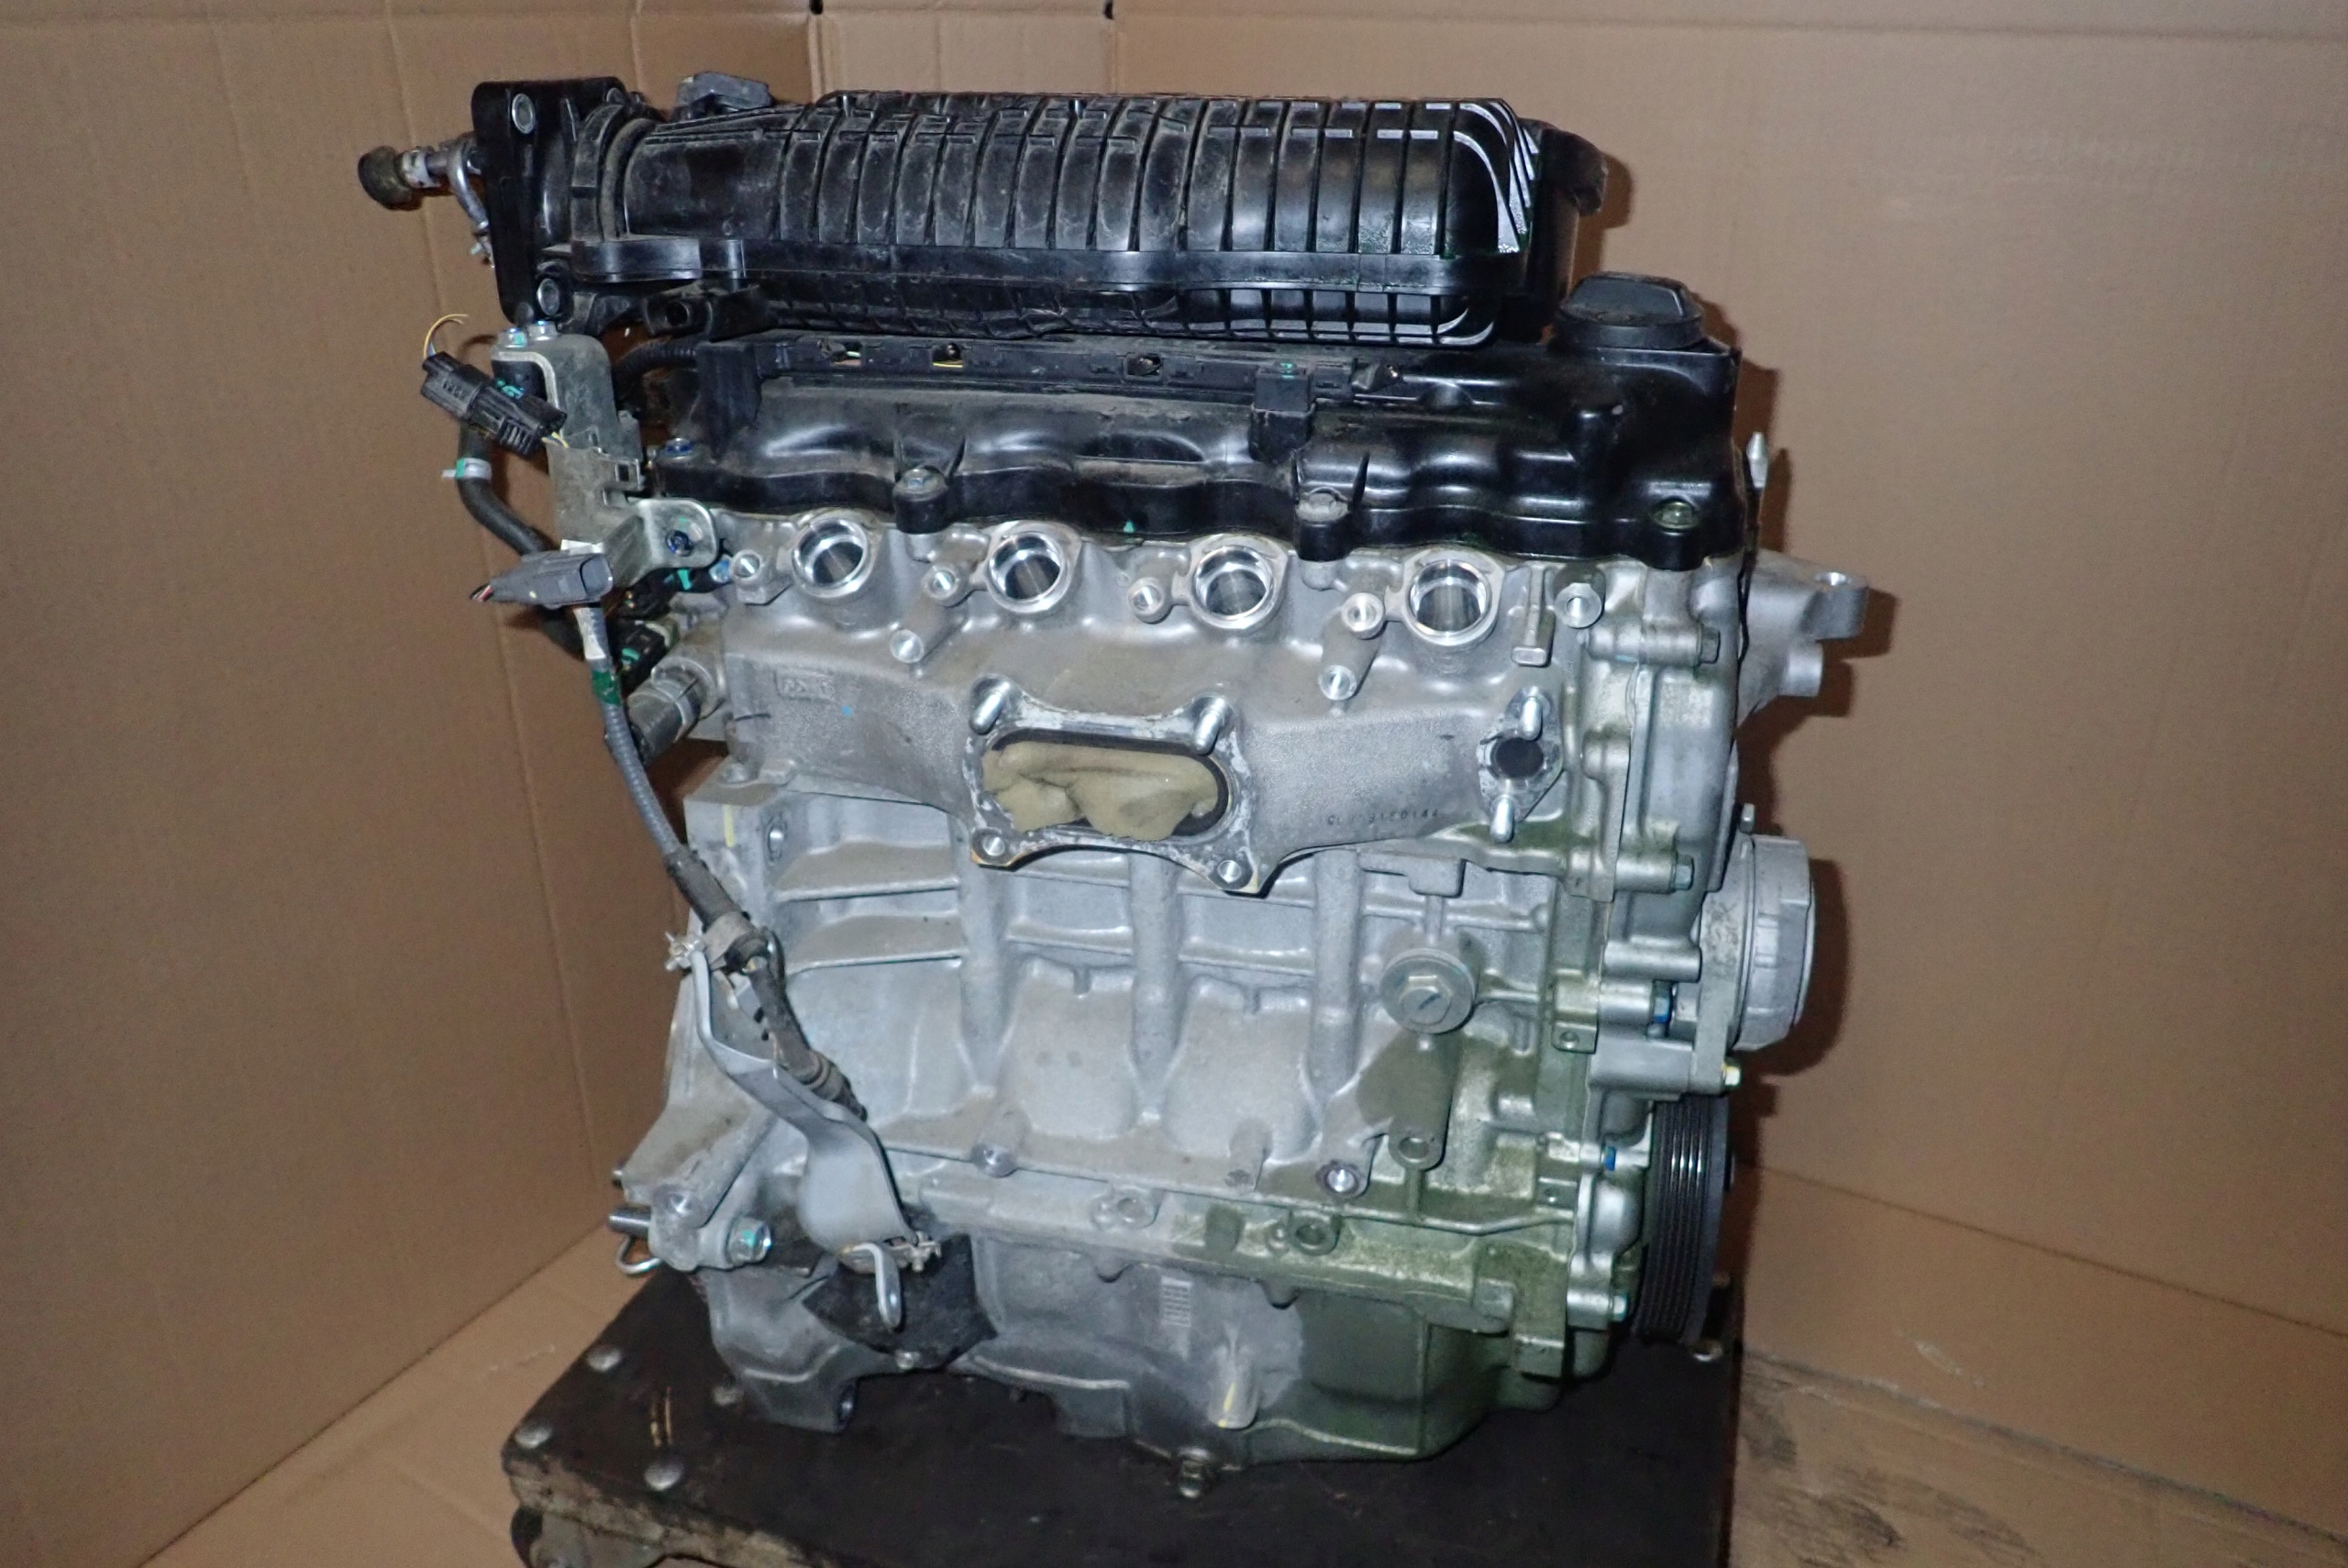 Двигателиl15a, l15b, l15c honda: характеристики, ремонтопригодность